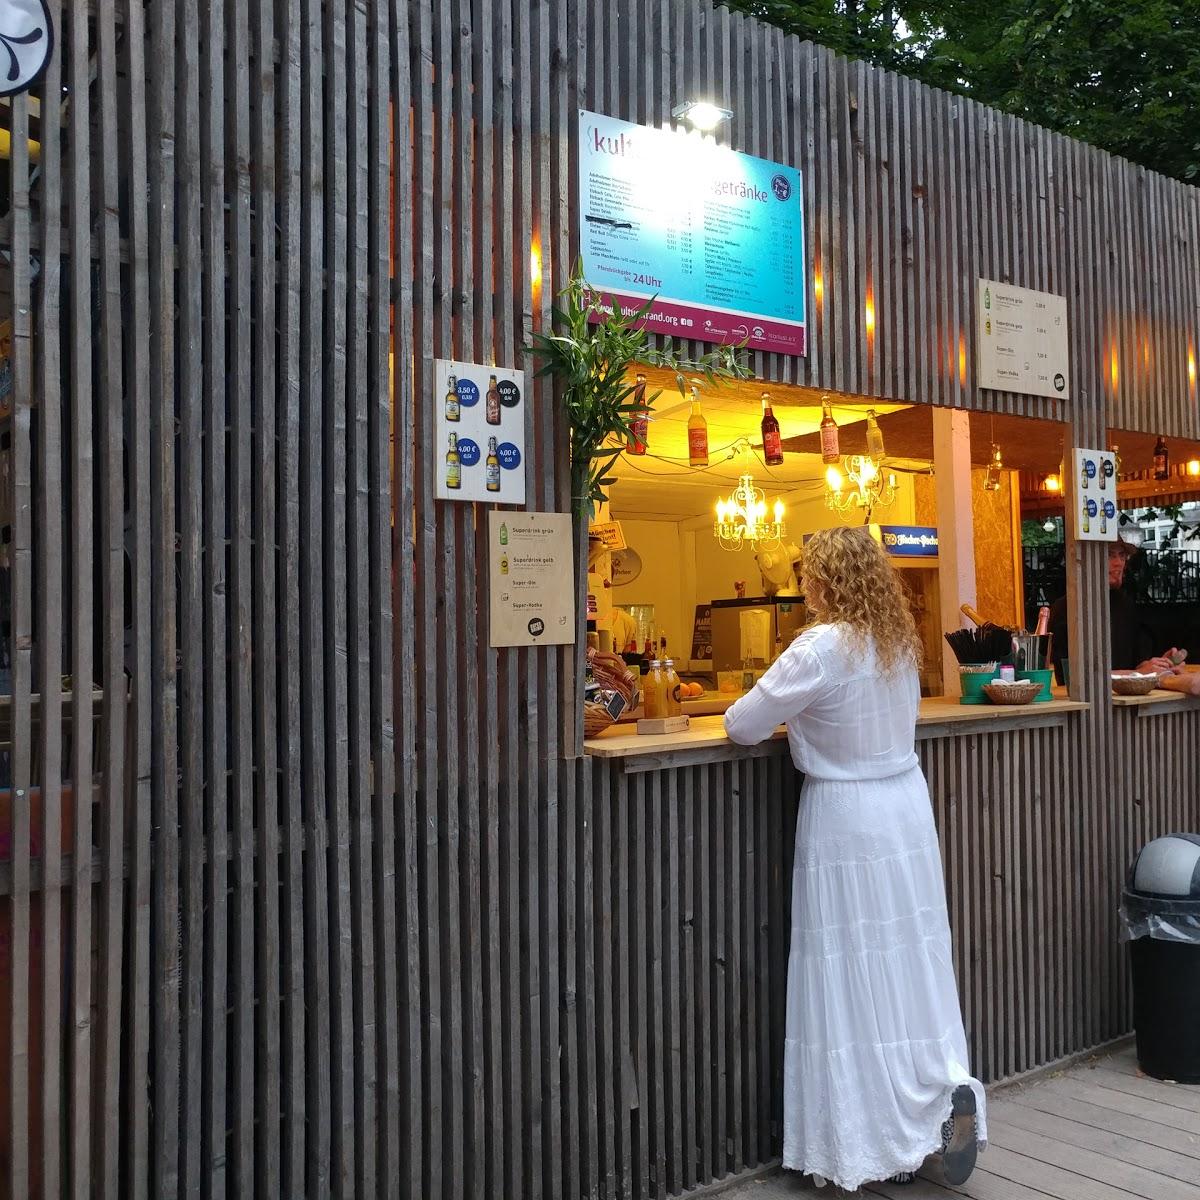 Restaurant "Kulturstrand der urbanauten" in München